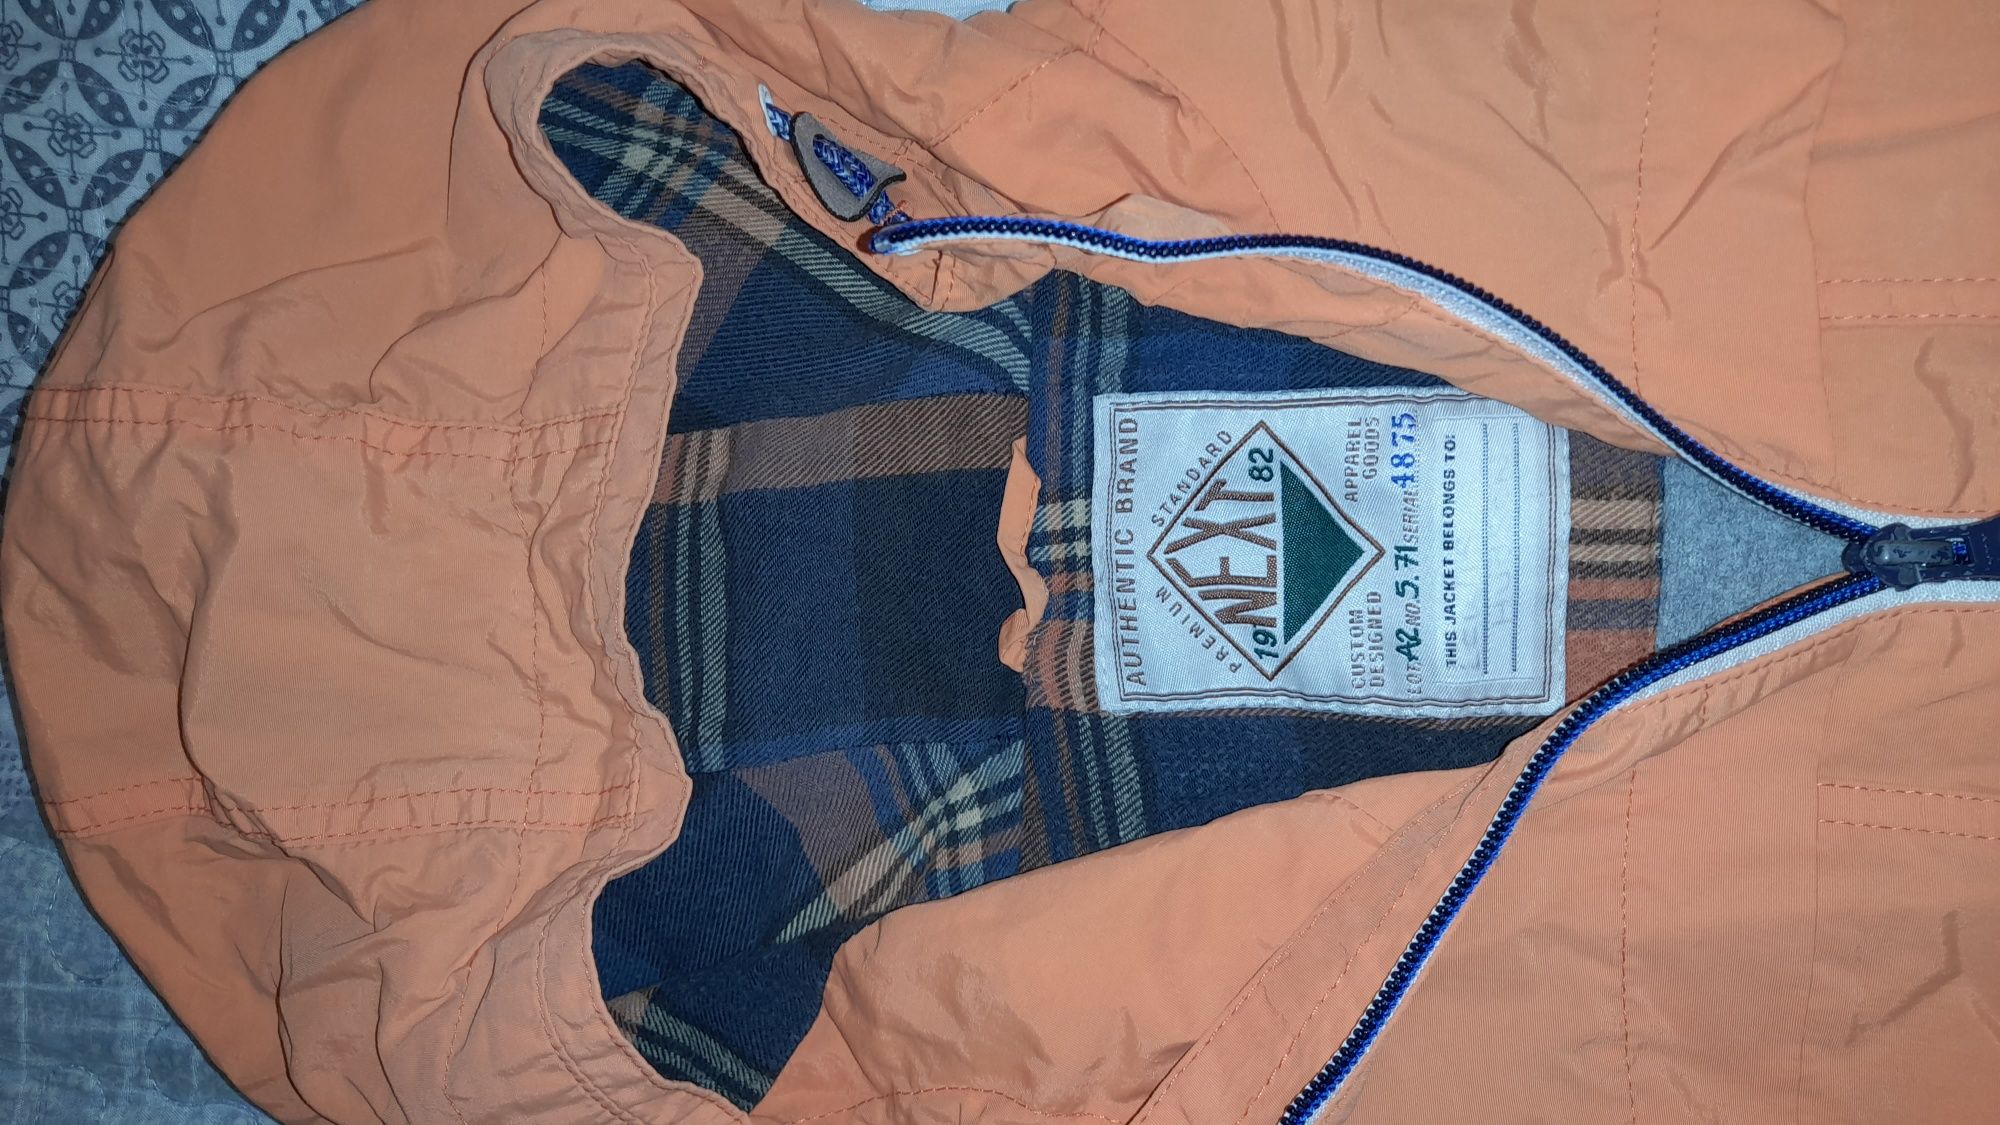 Куртка ветровка Next, с флисовой подкладкой. Р. 122.  6-7 лет.